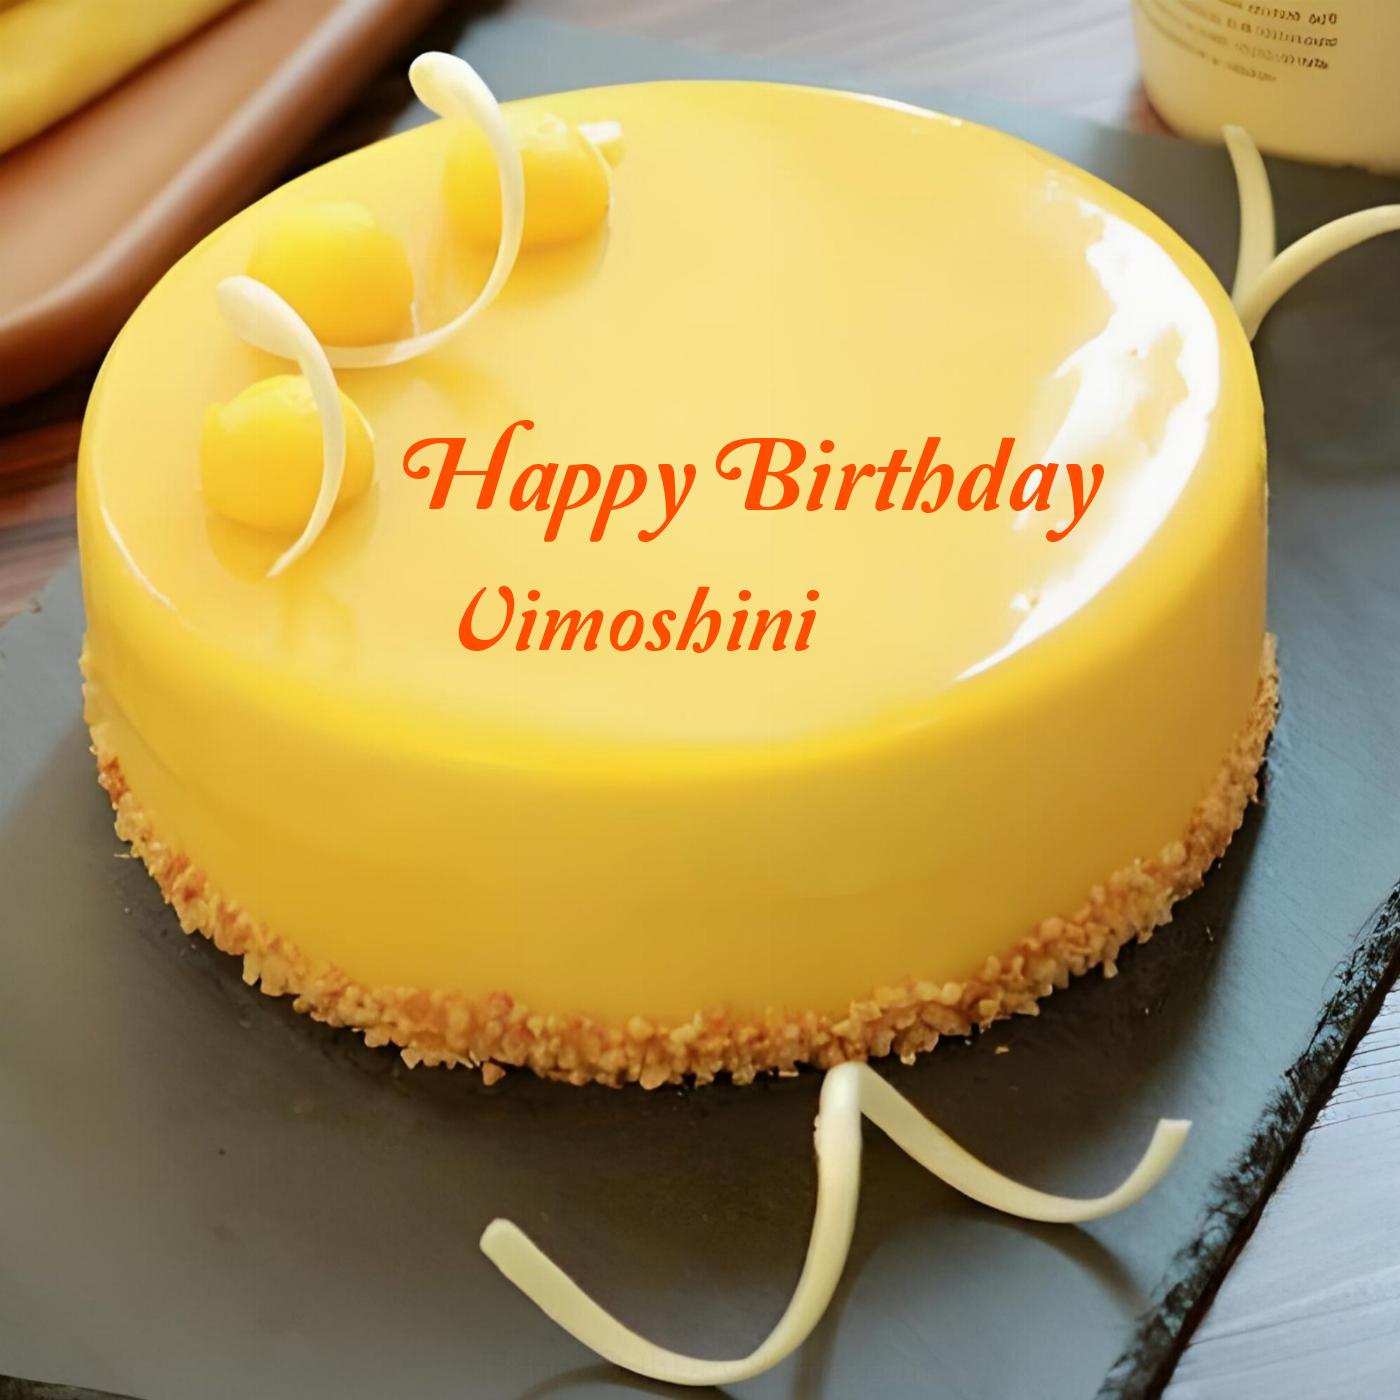 Happy Birthday Vimoshini Beautiful Yellow Cake